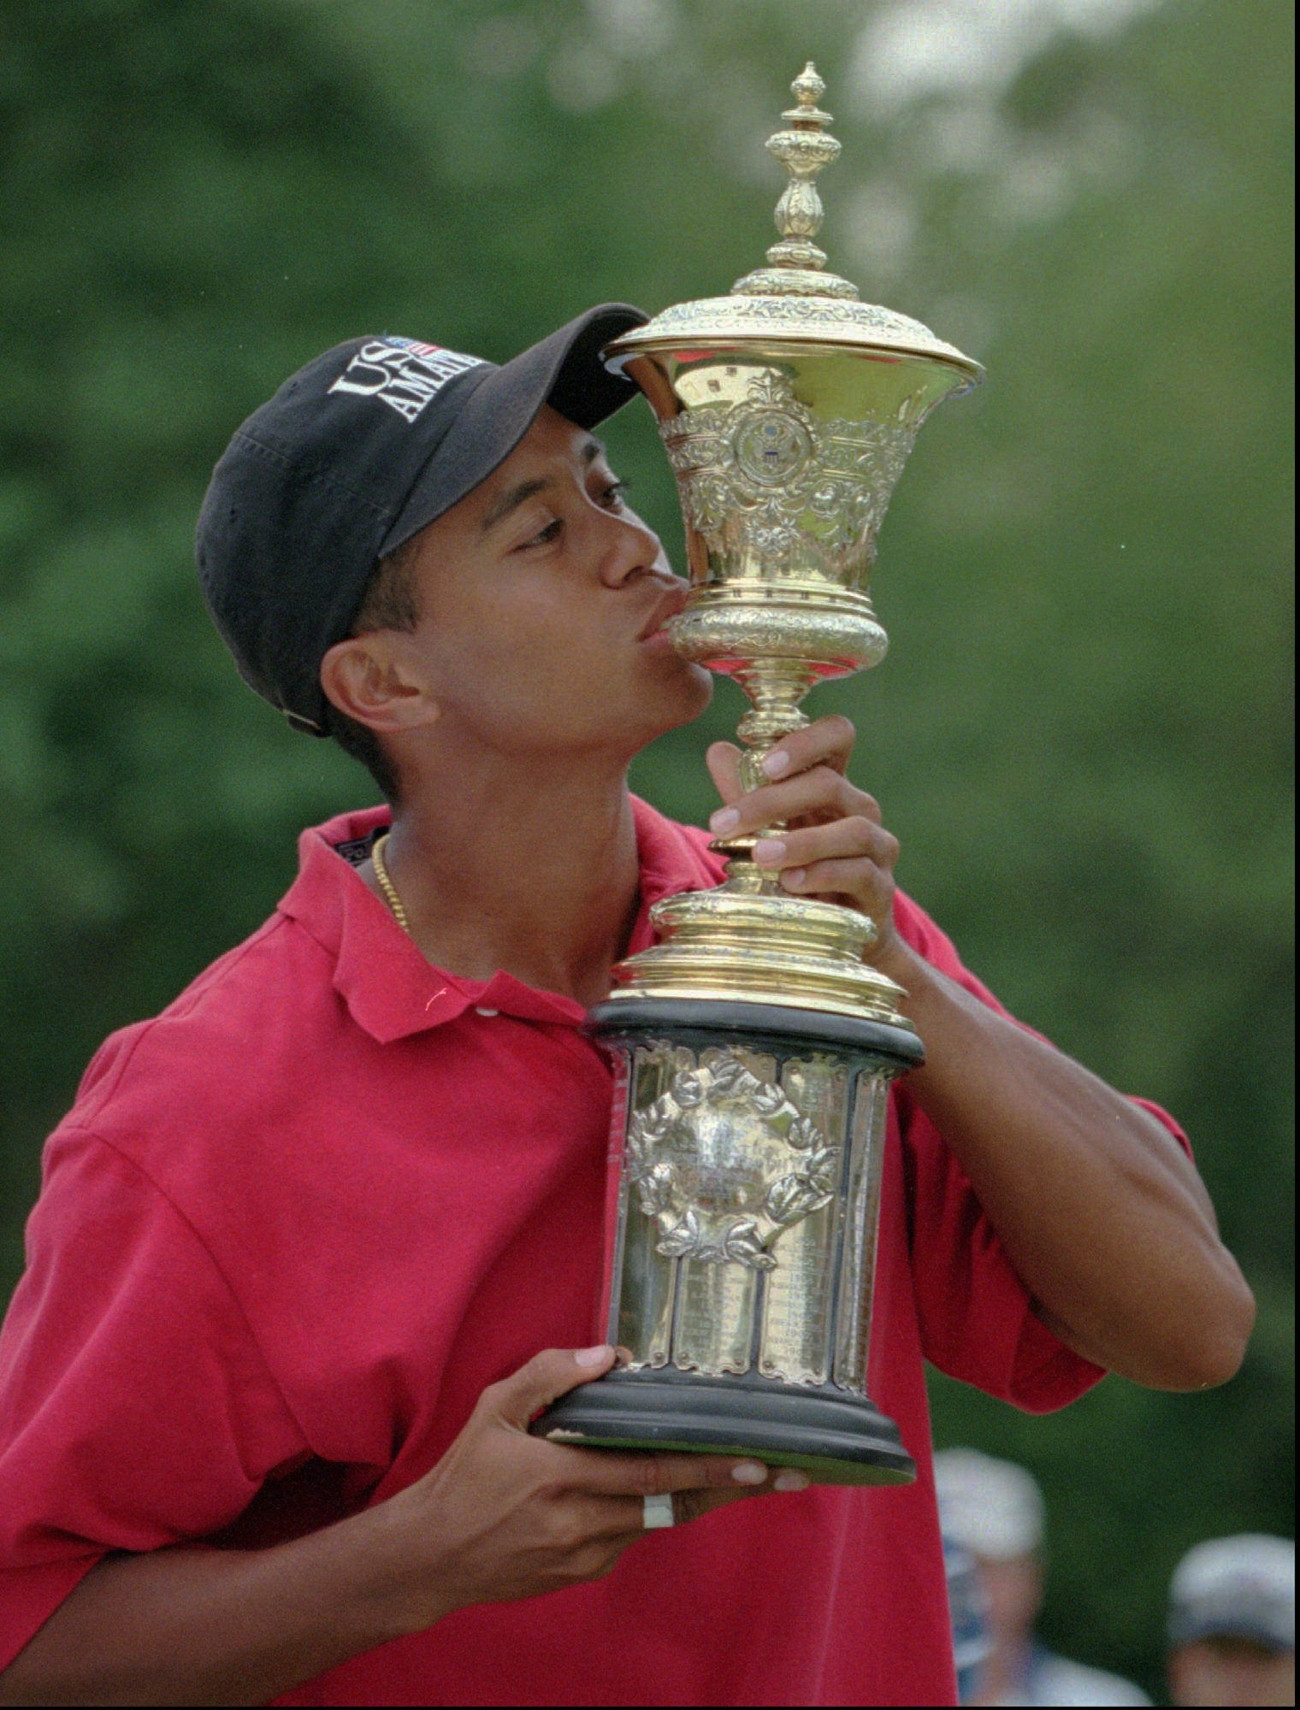 Series tìm hiểu những giải golf nghiệp dư danh giá: U.S. Amateur Championship – giải đấu ươm mầm các tượng đài golf Thế giới - Ảnh 3.